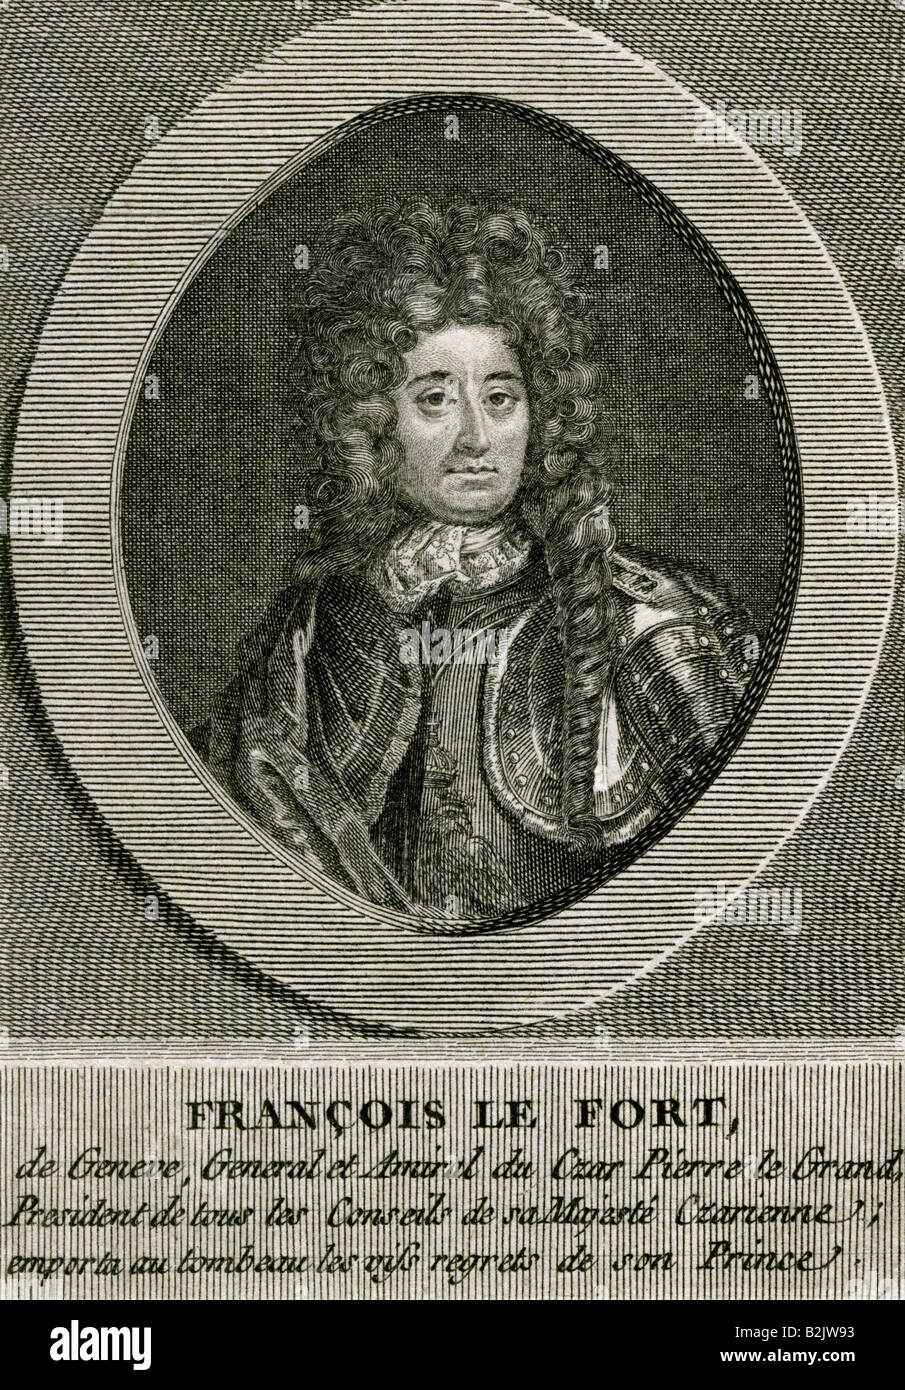 Lefort, Franz, 2.1.1656 - 12.3.1699, homme politique russe, l'amiral, l'origine suisse, portrait, gravure sur cuivre, par Droyer, vers 1700, l'artiste n'a pas d'auteur pour être effacé Banque D'Images